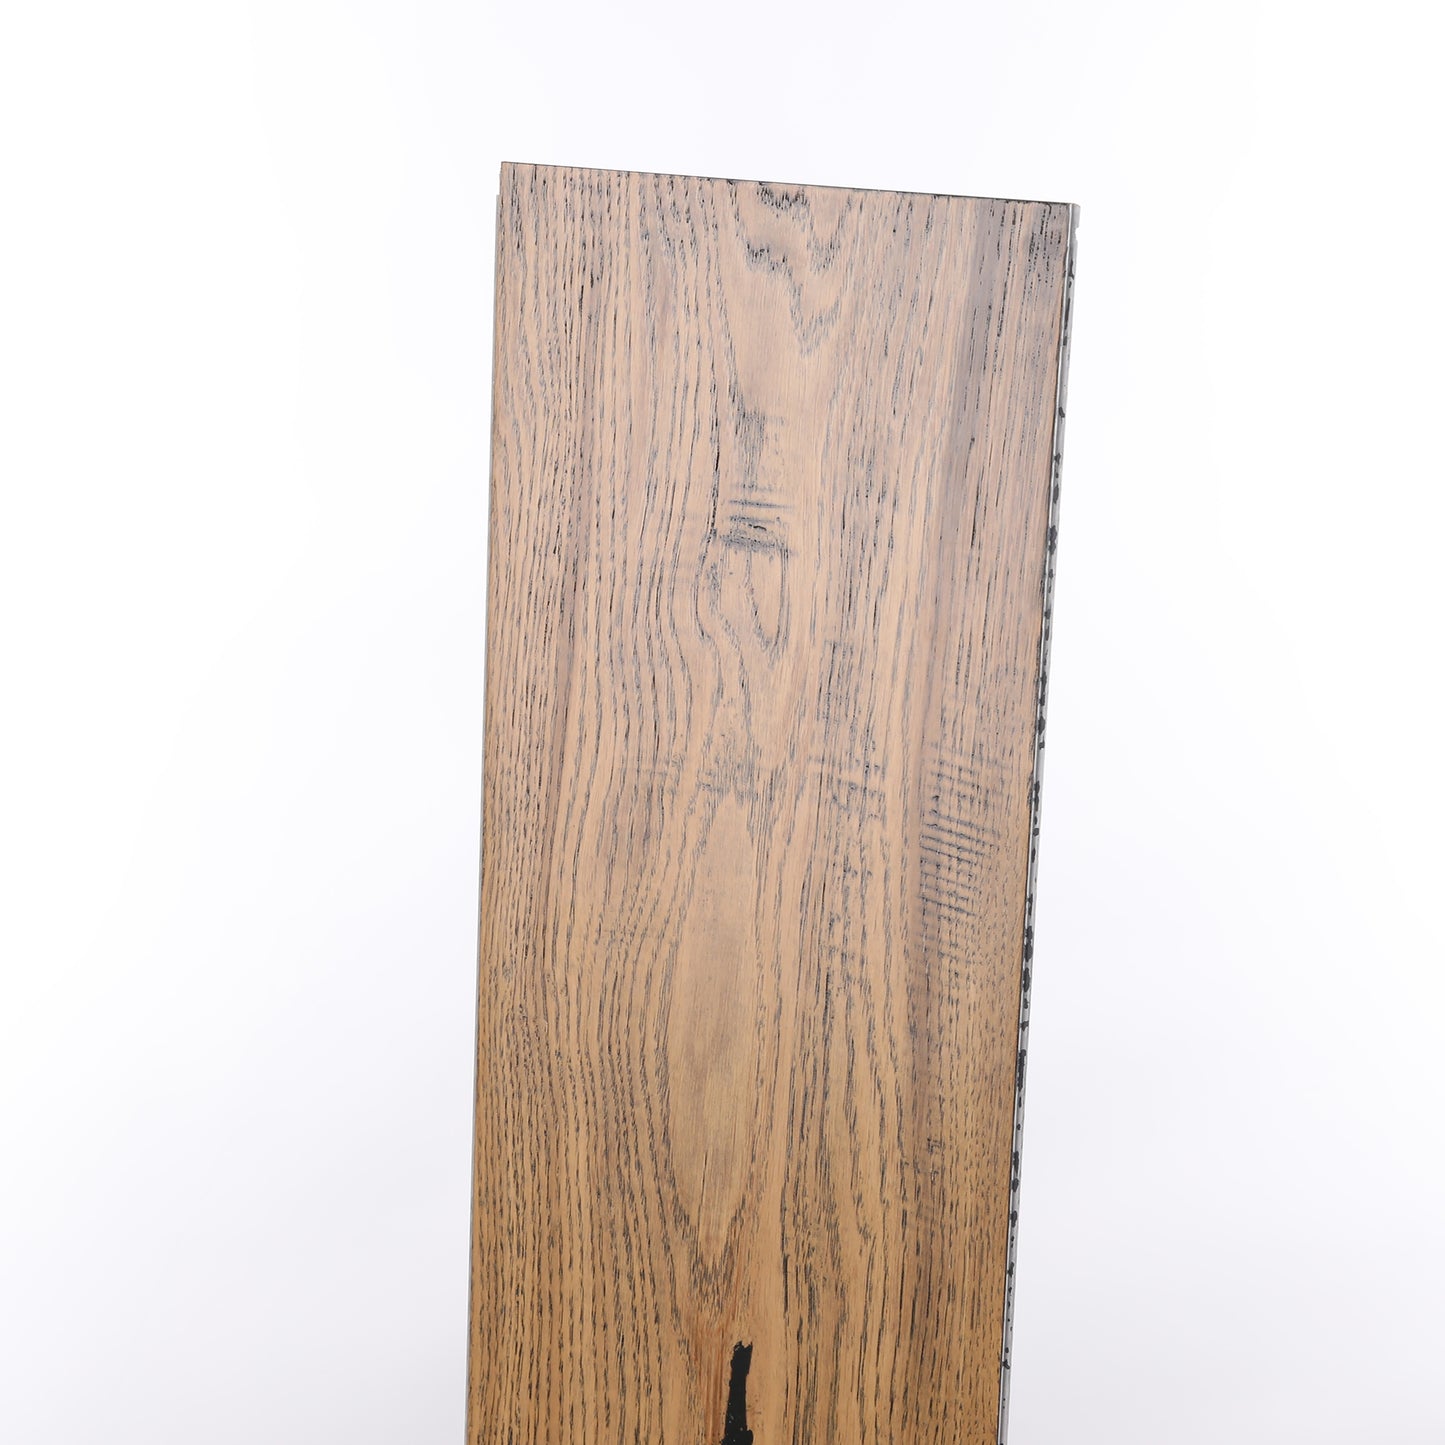 8mm Weathered Oak Waterproof Engineered Hardwood Flooring 7.48 in. Wide x Varying Length Long